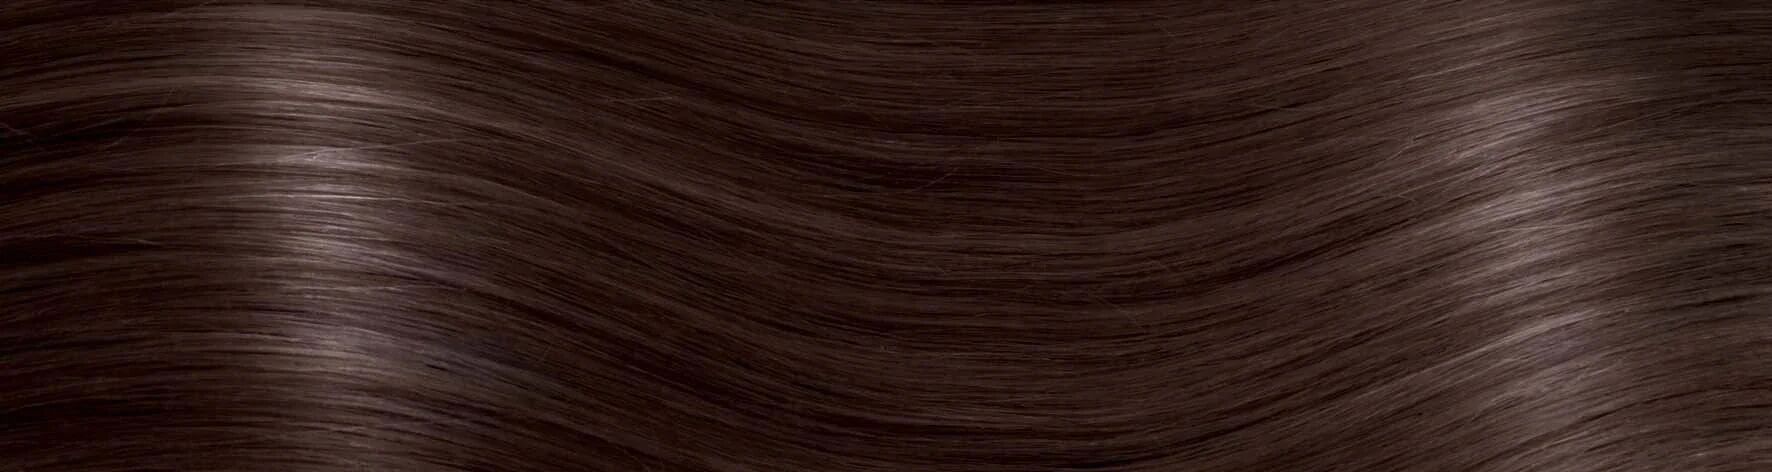 rewo hair extension con cheratina capelli naturali 55/60 cm confezione da 10 ciocche